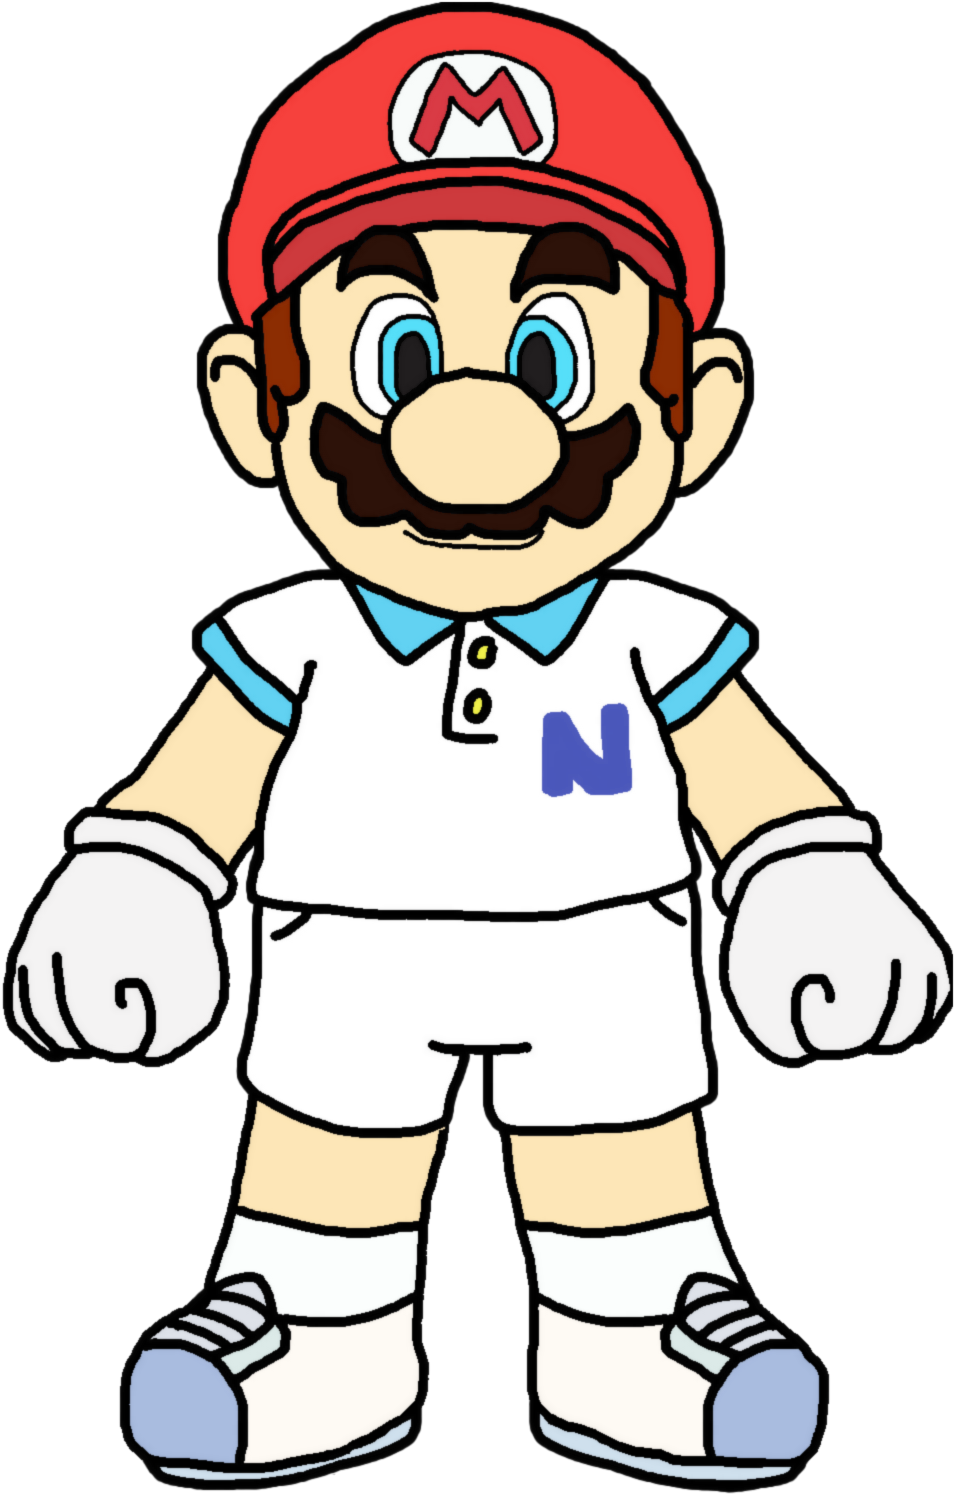 Mario - Tennis - Katlime Deviantart Mario (955x1628)